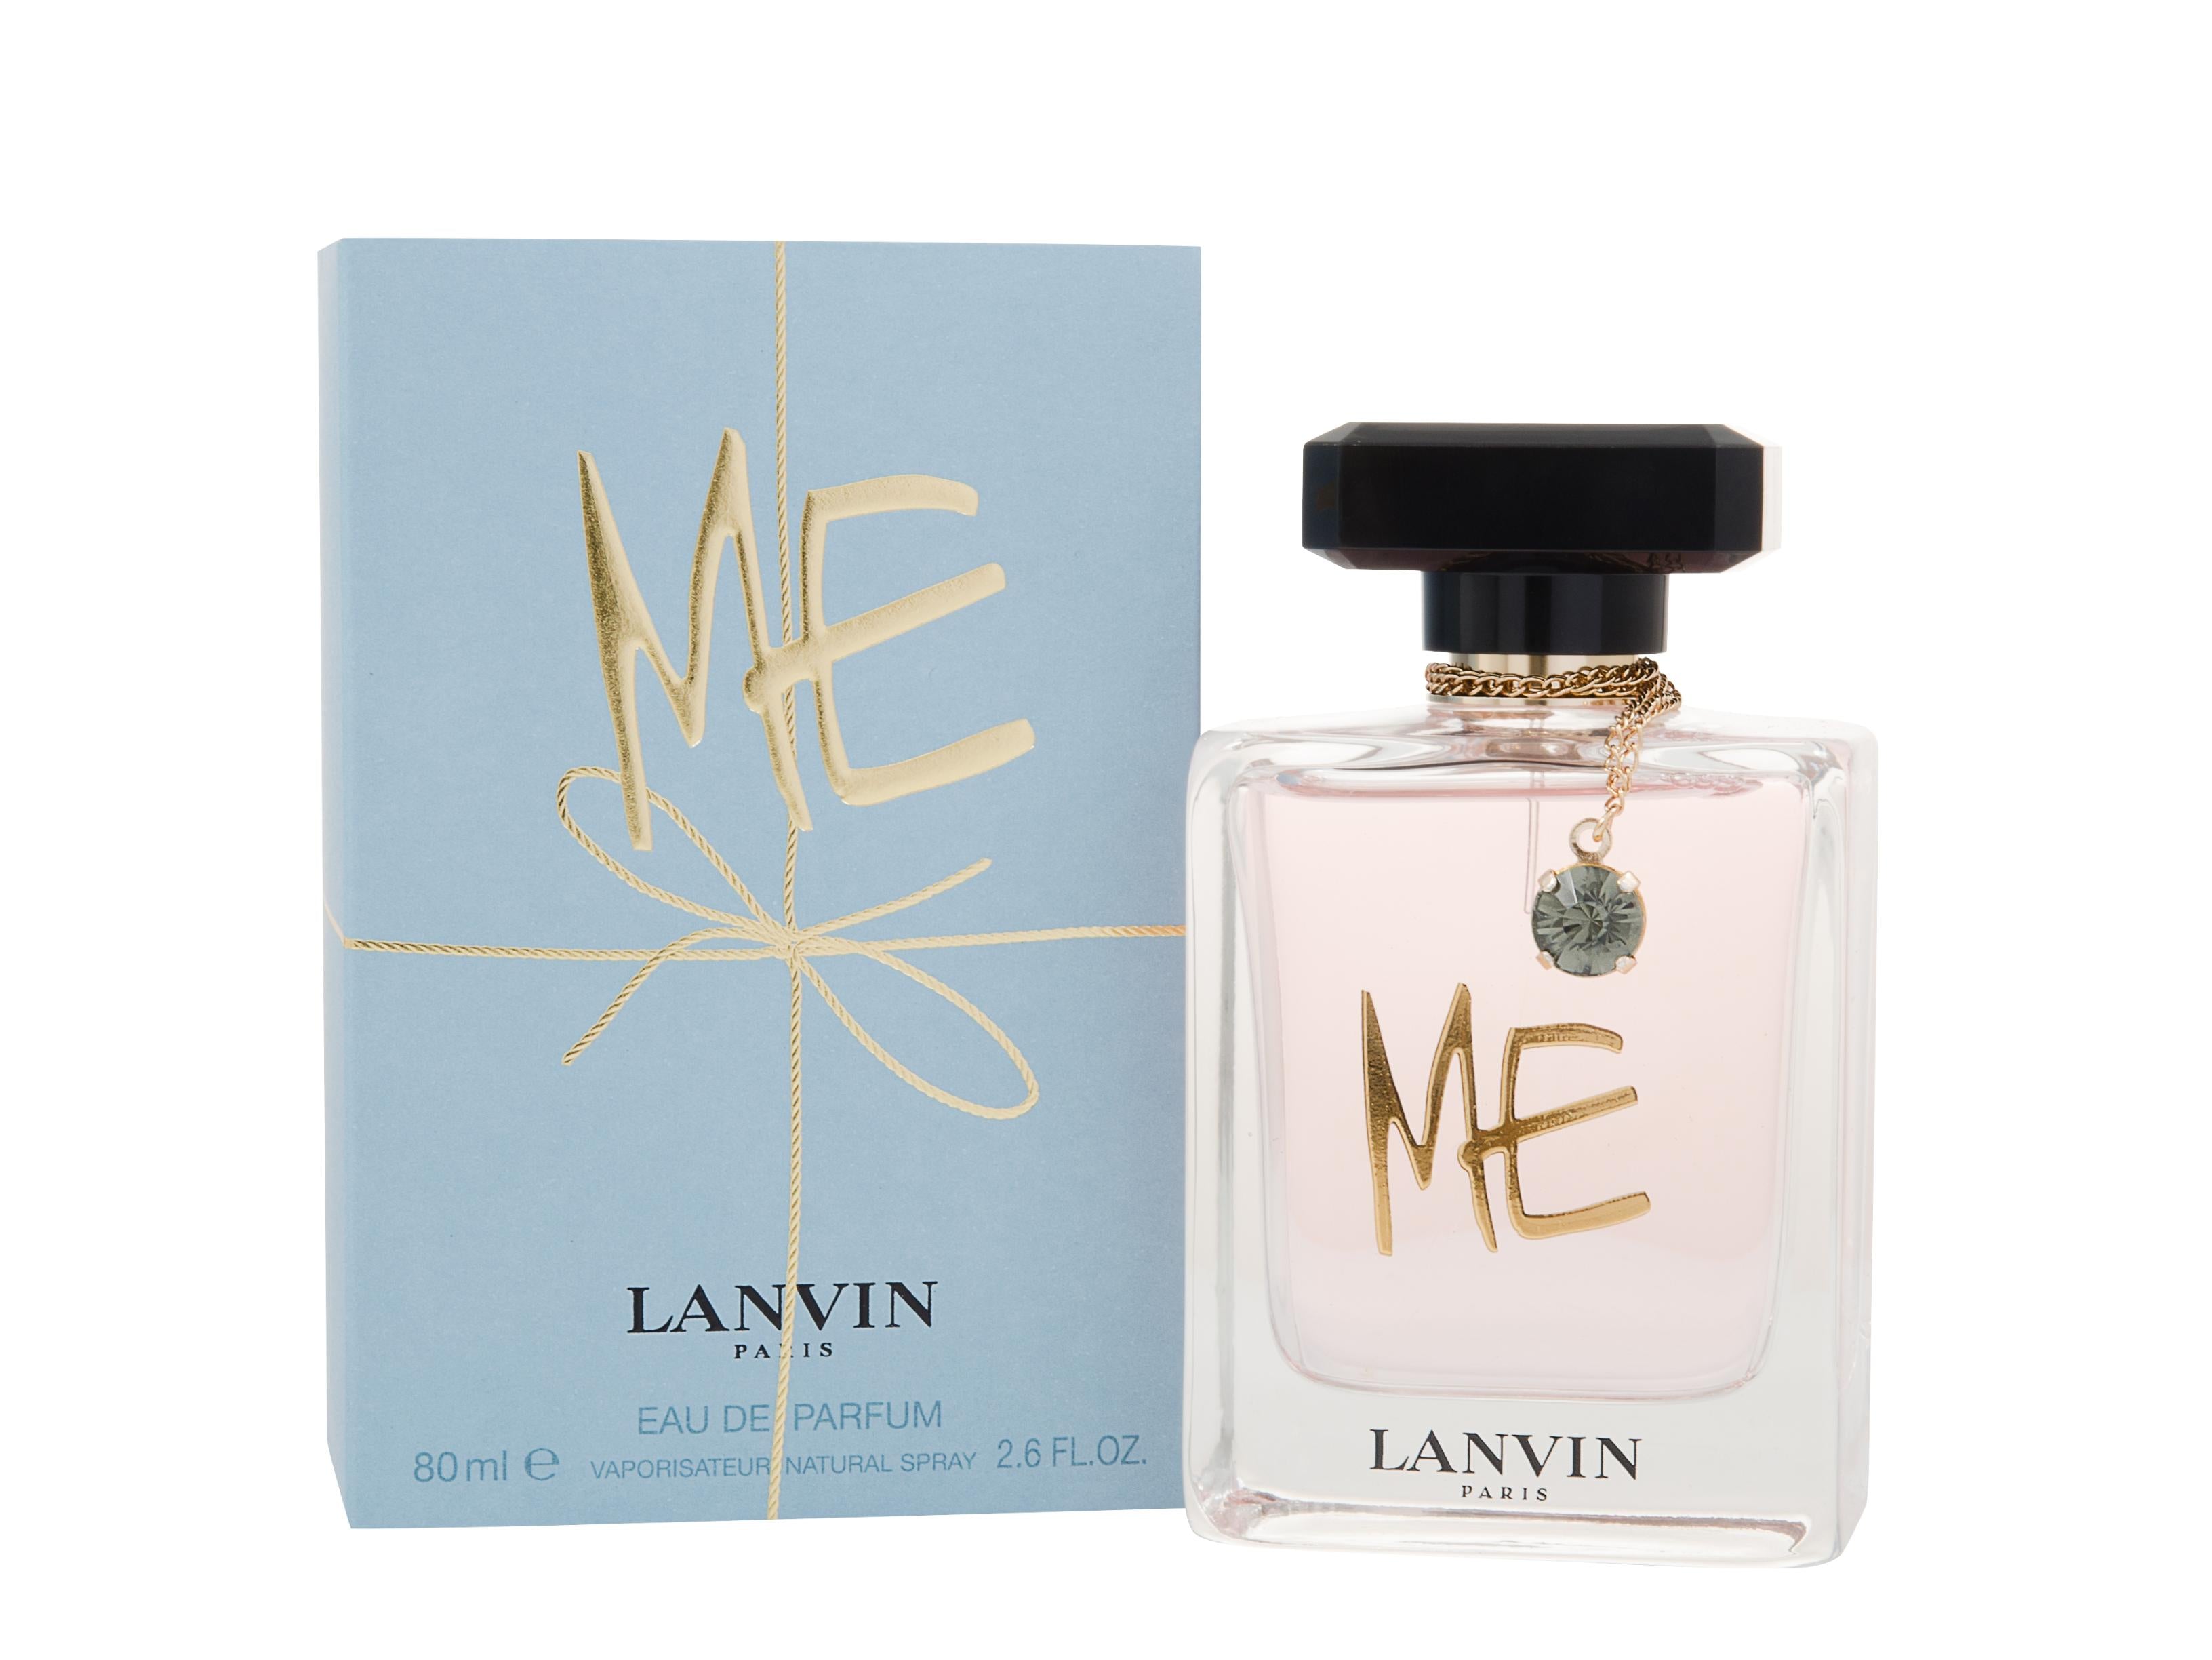 View Lanvin Me Eau de Parfum 80ml Spray information